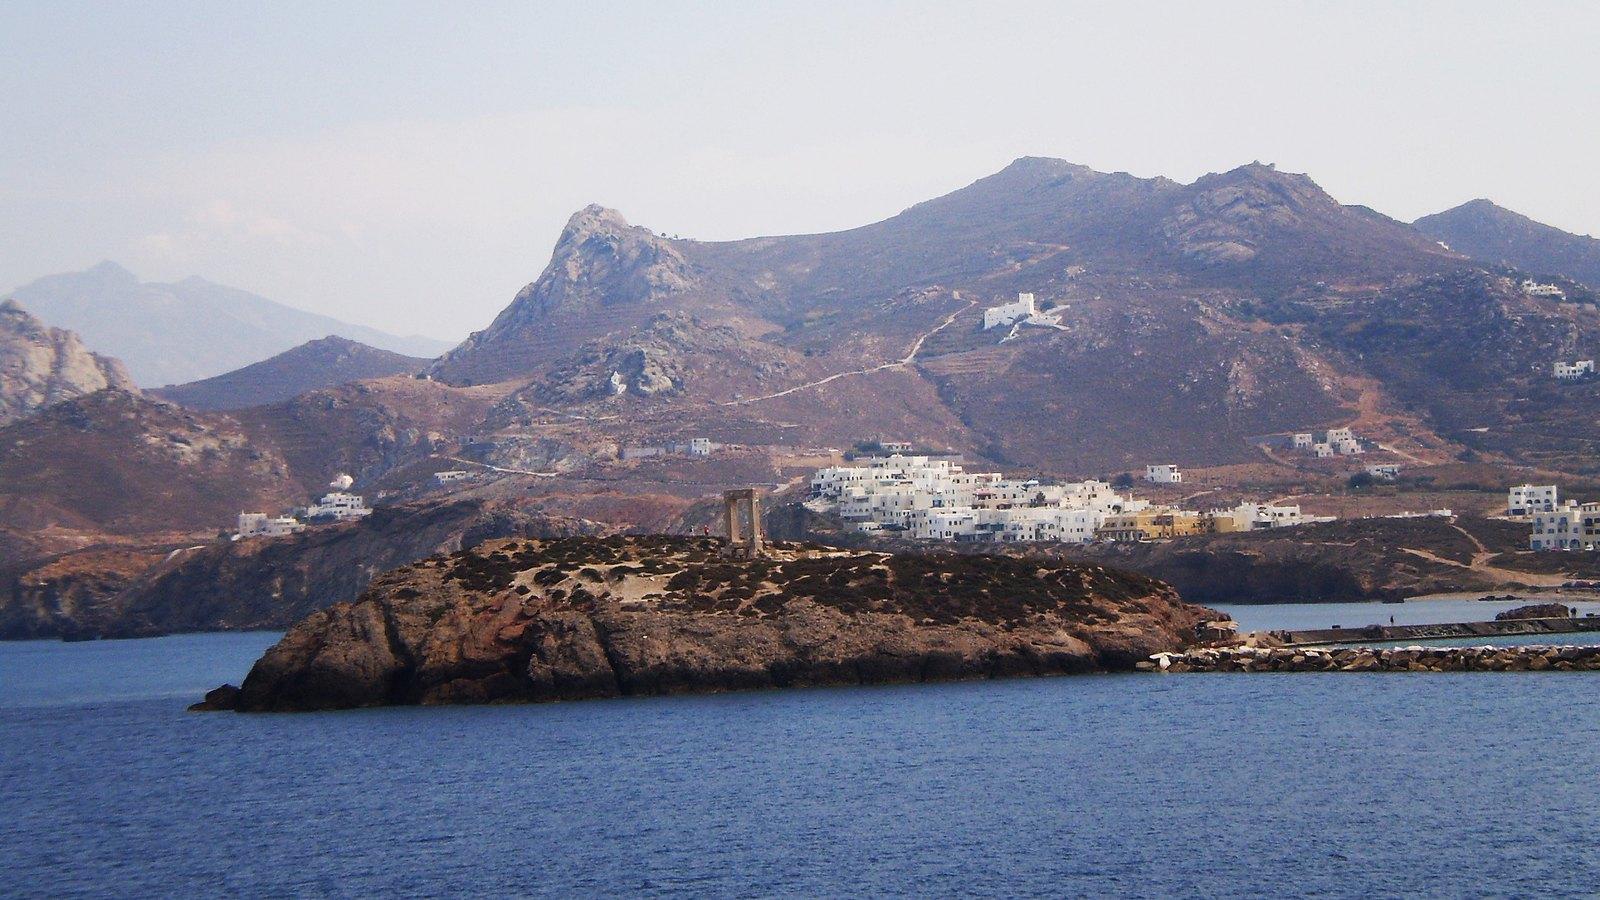 πορταρα ναξοσ φωτογραφία με το μνημείο "σημα κατατεθέν" του νησιού και στο βάθος η Χώρα της Νάξου